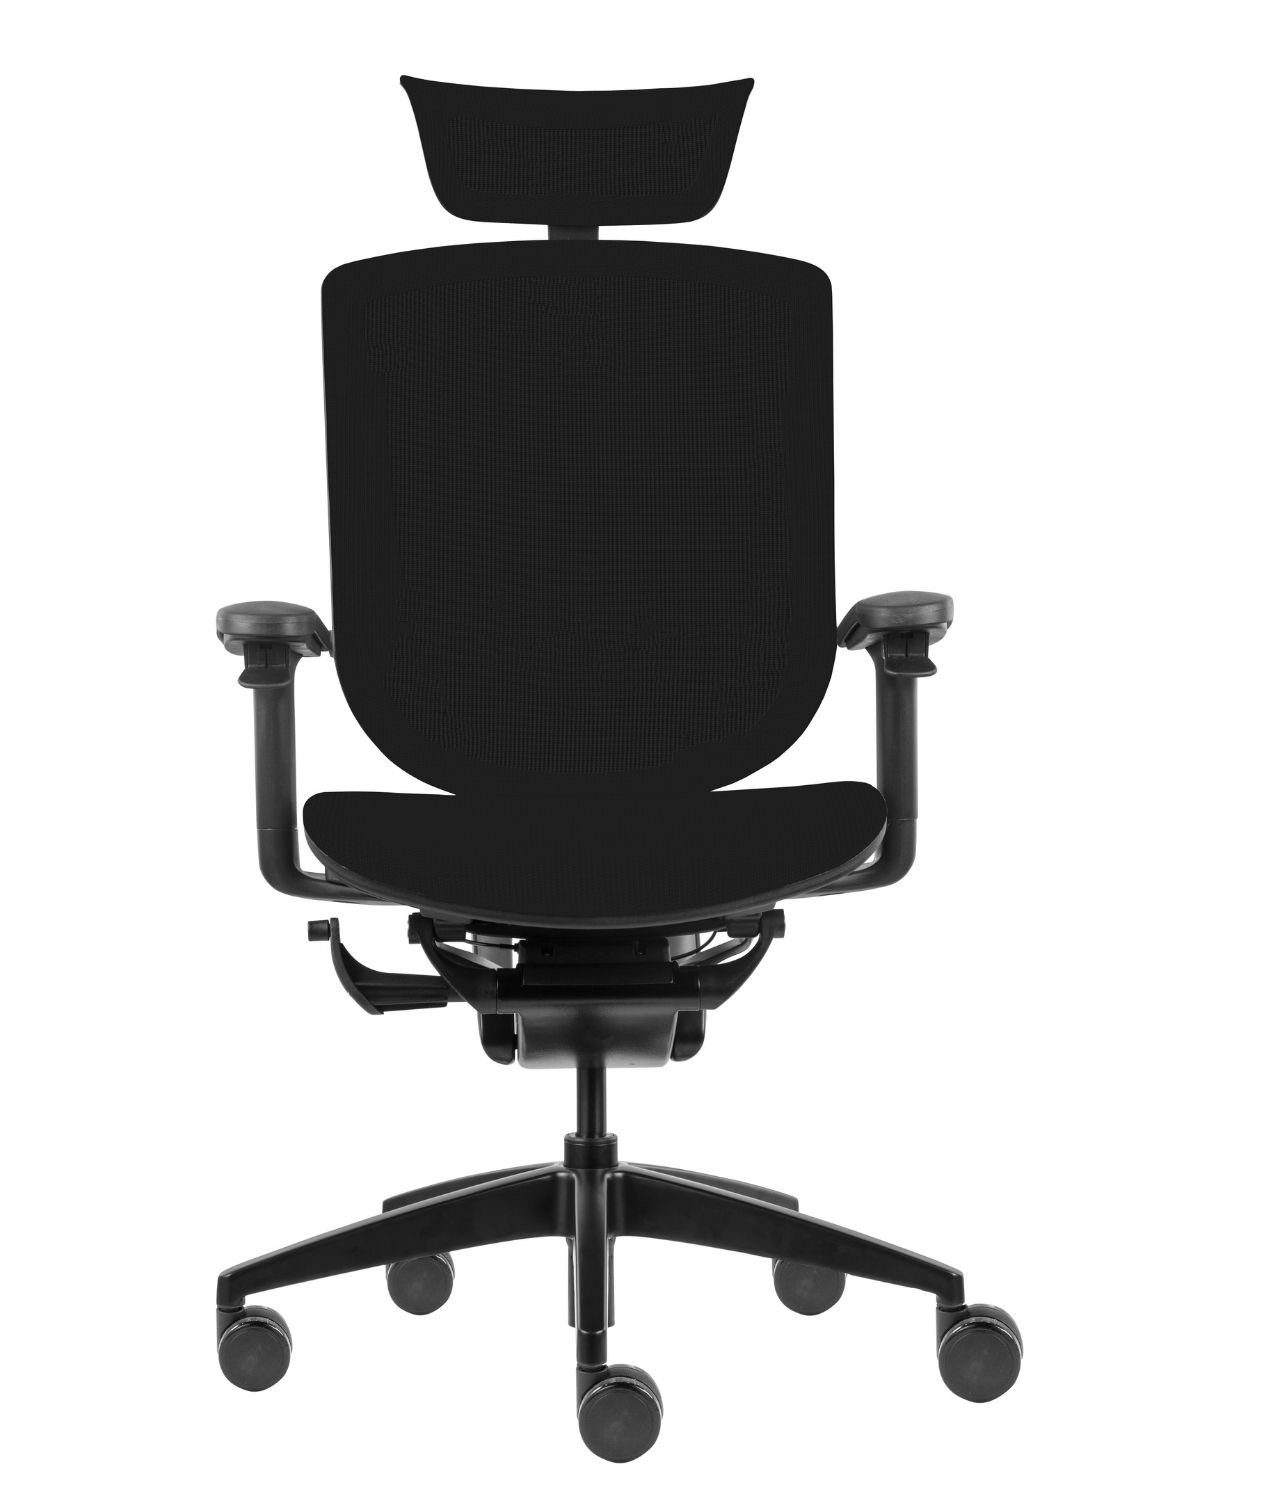 Fotel biurowy ergonomiczny Zhuo Maven - aluminium malowane proszkowo na czarno